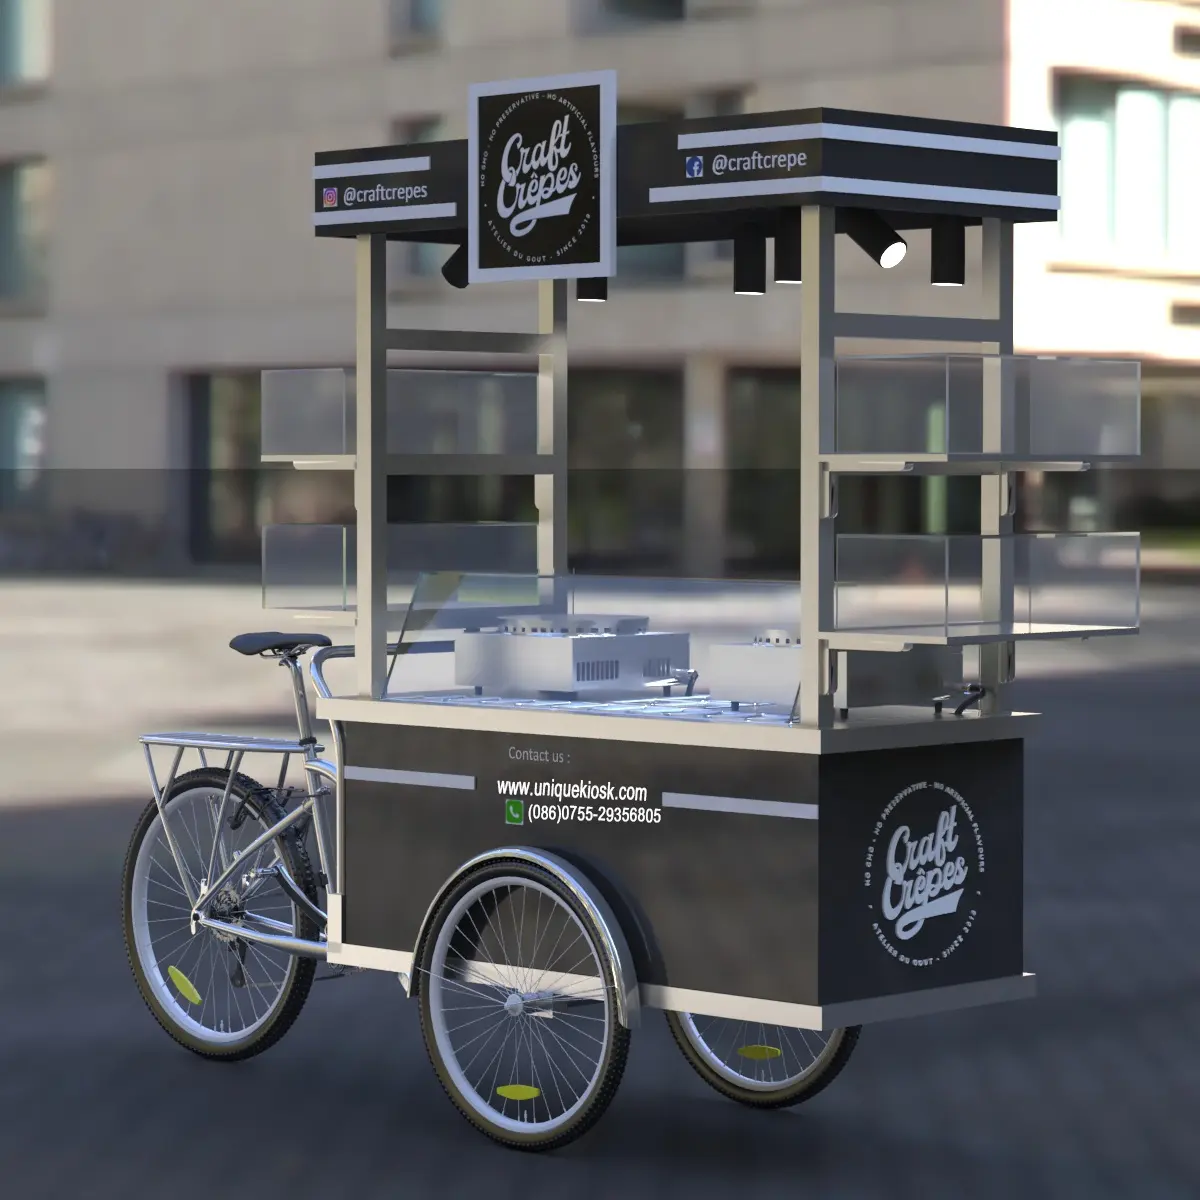 Harika gıda sepeti ve tavan/küçük açık mobil krep kiosk, taşınabilir waffle vitrin/booth tasarım satılık